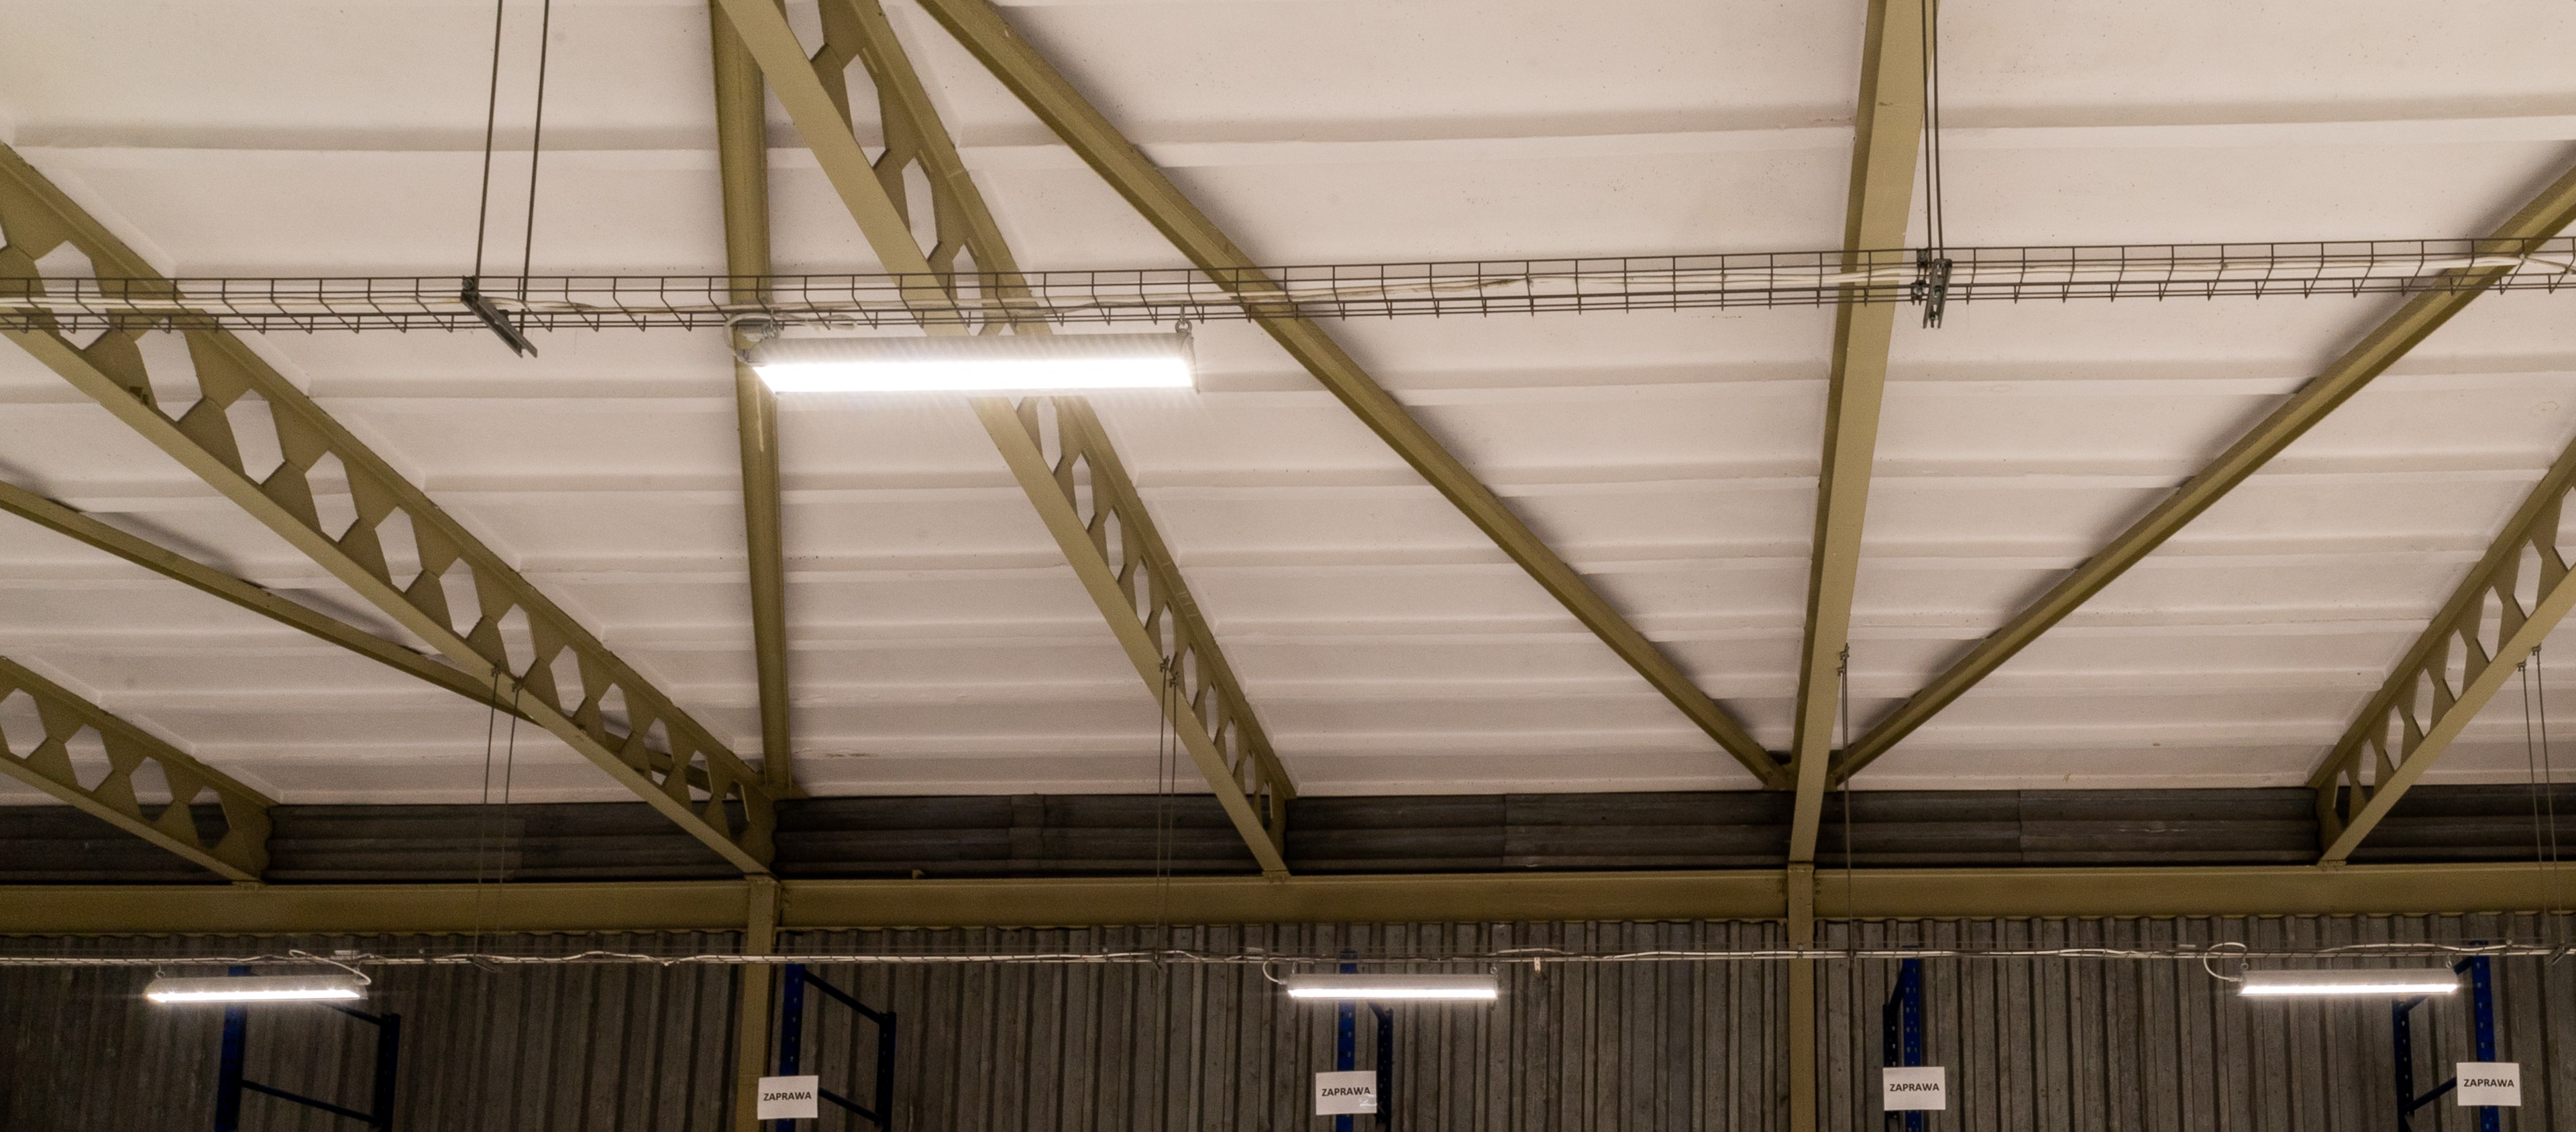 Serwis opraw LED ma duże znaczenie przy ich funkcjonowaniu i żywotności.